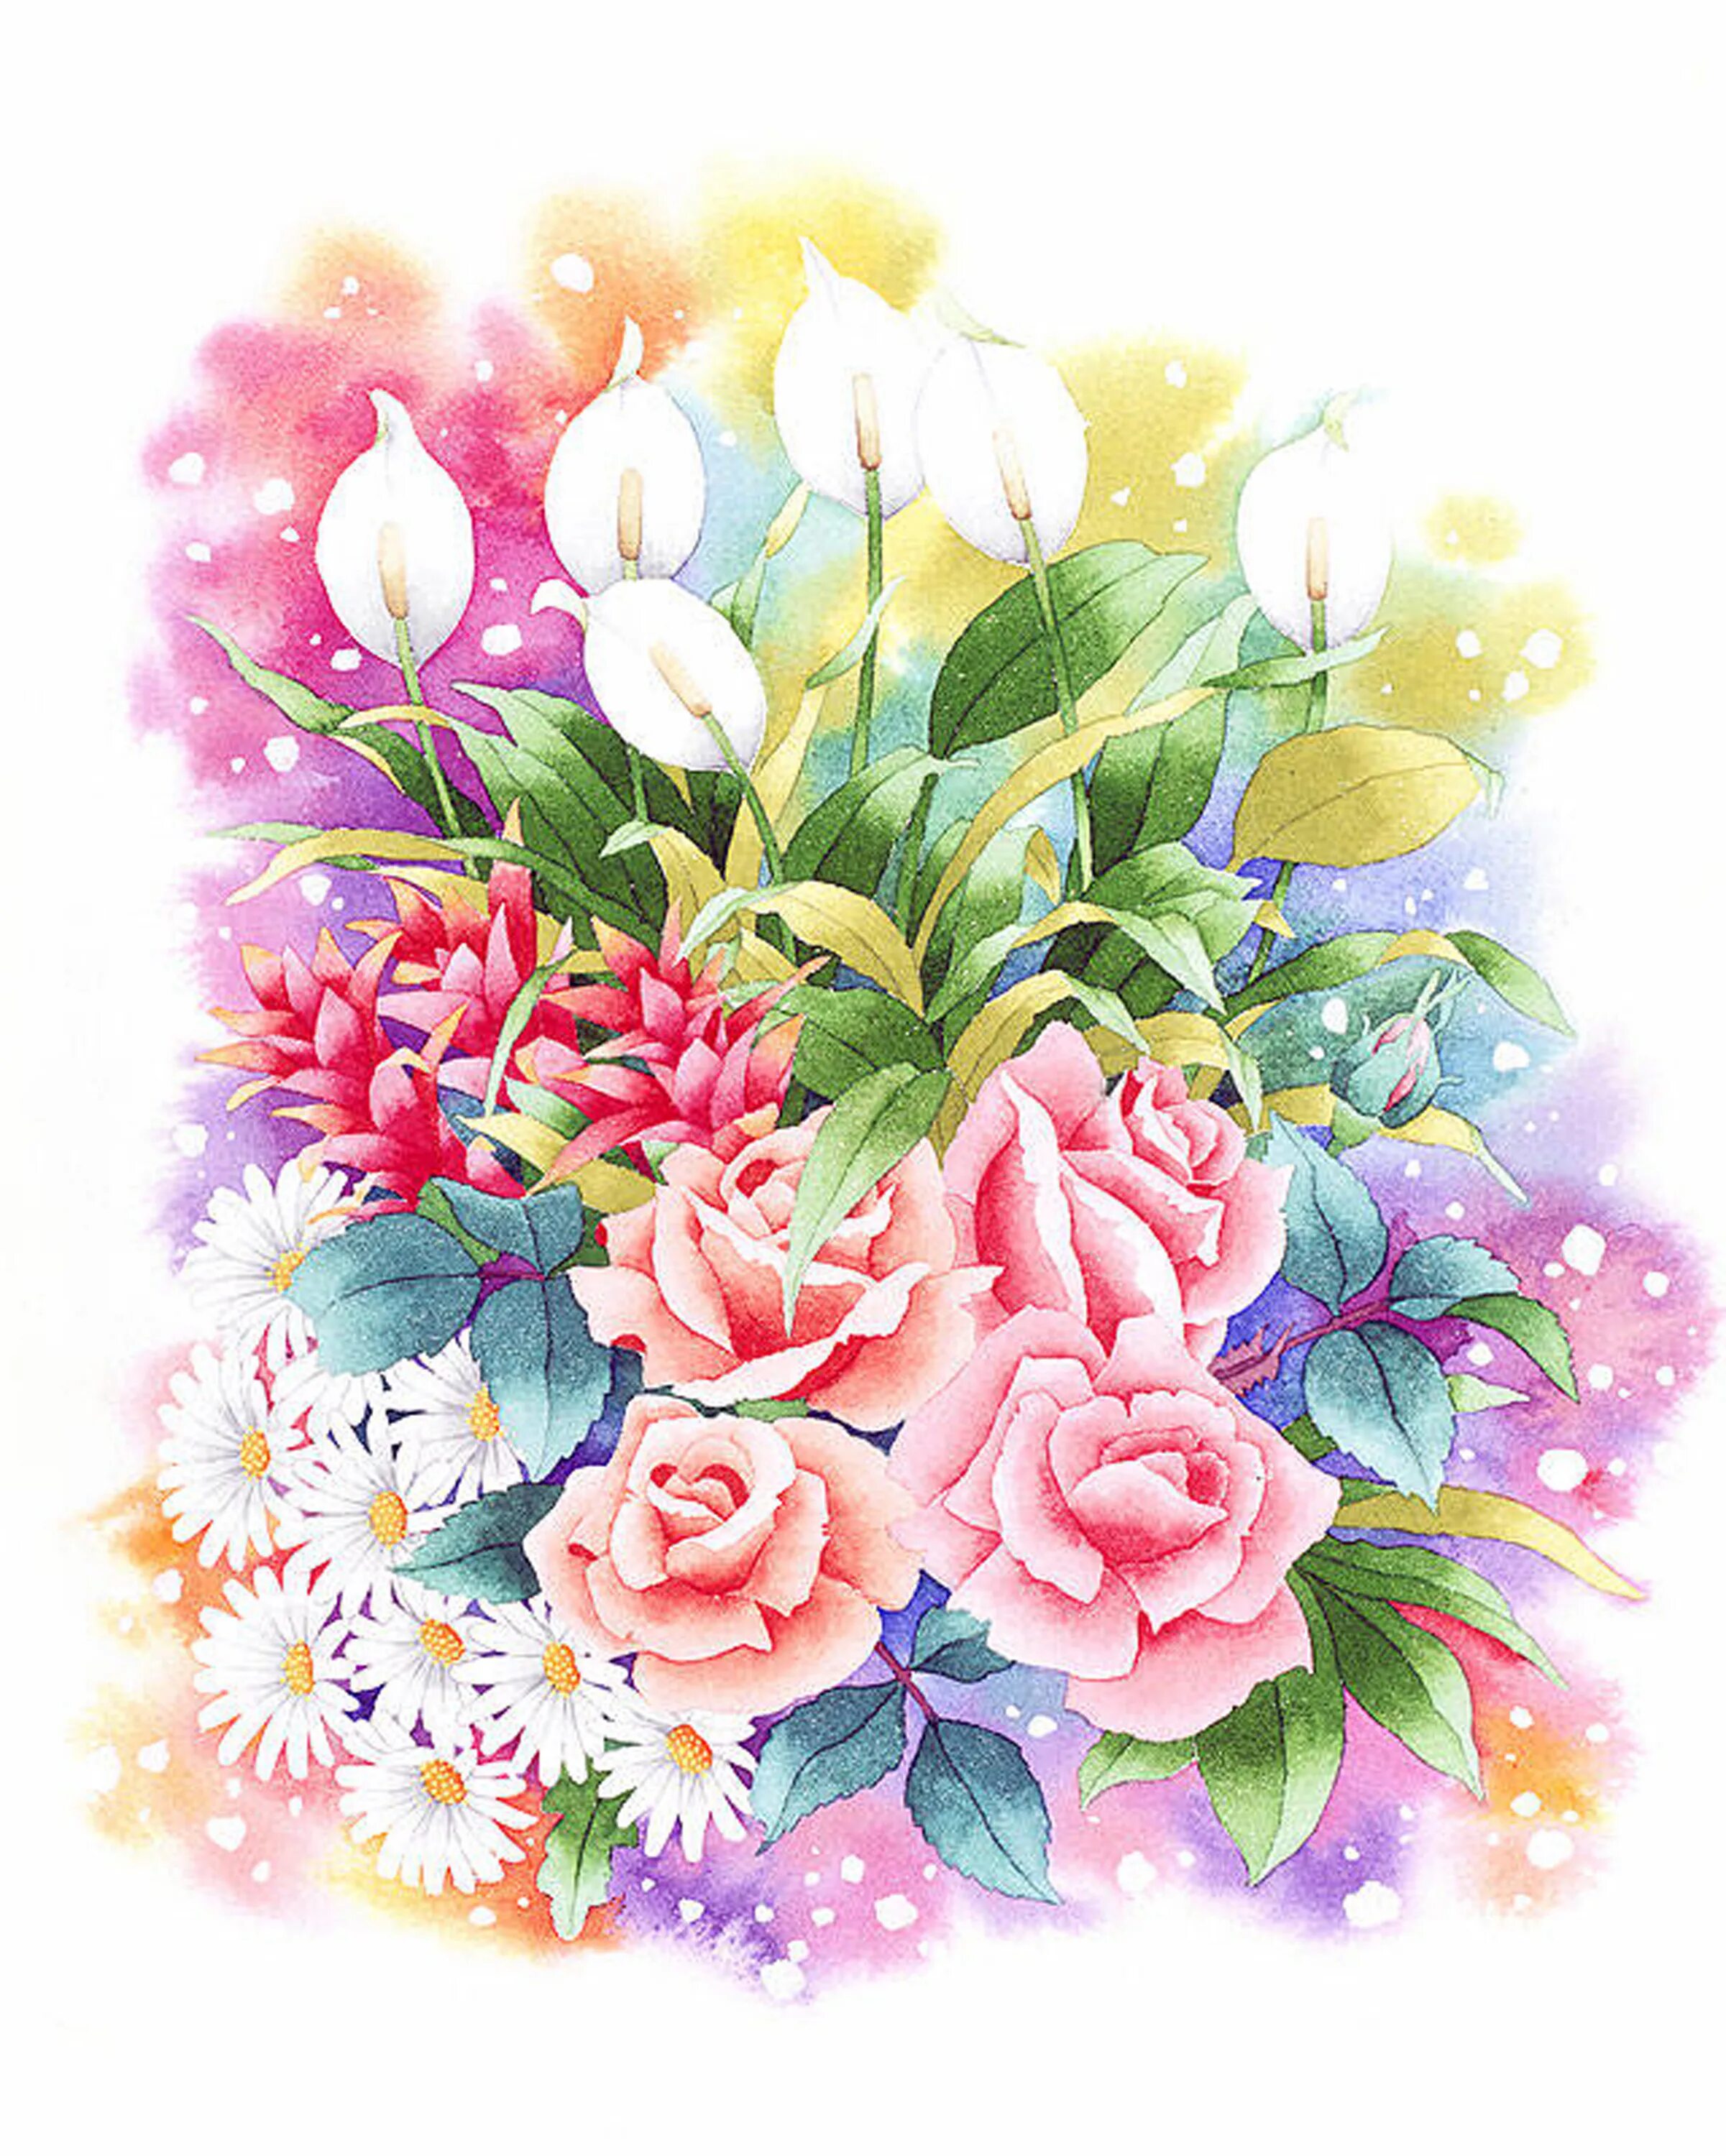 Цветные открытки. Ибараги Йосиюки. Ибараги Йосиюки (Ibaragi Yoshiyuki). Ибараги Йосиюки акварель. Акварельные цветы.